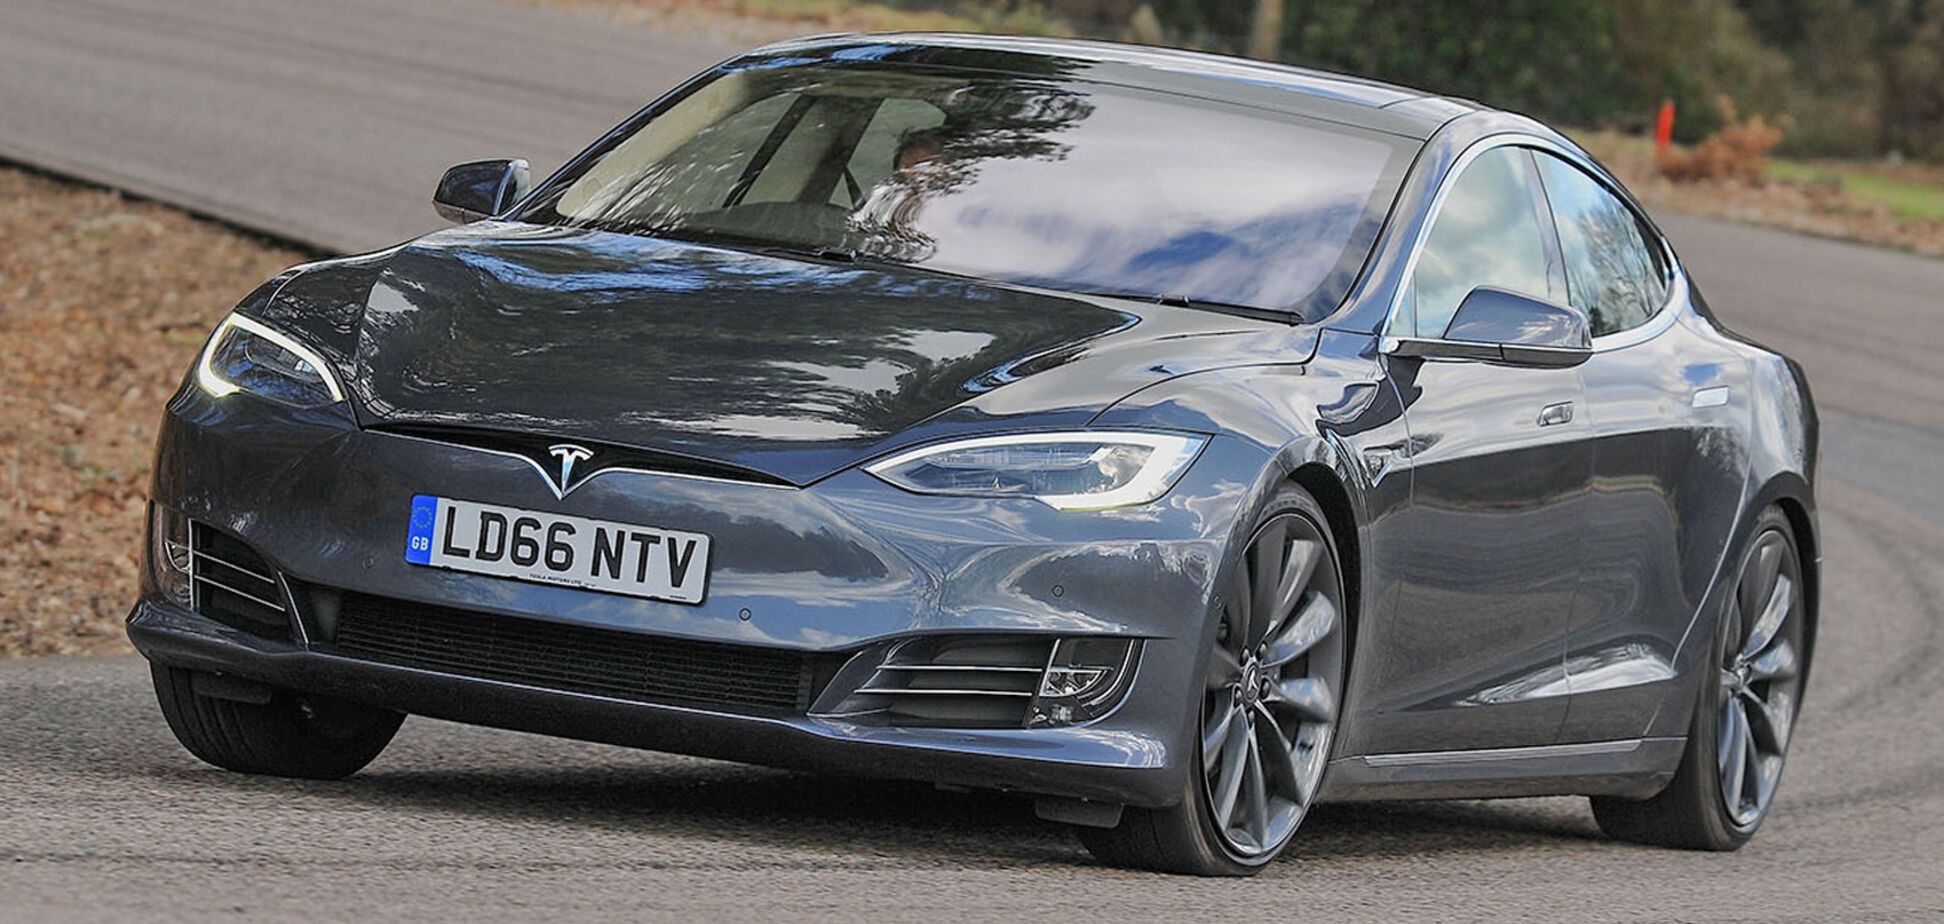 Официально: запас хода Tesla Model S составил почти 650 км